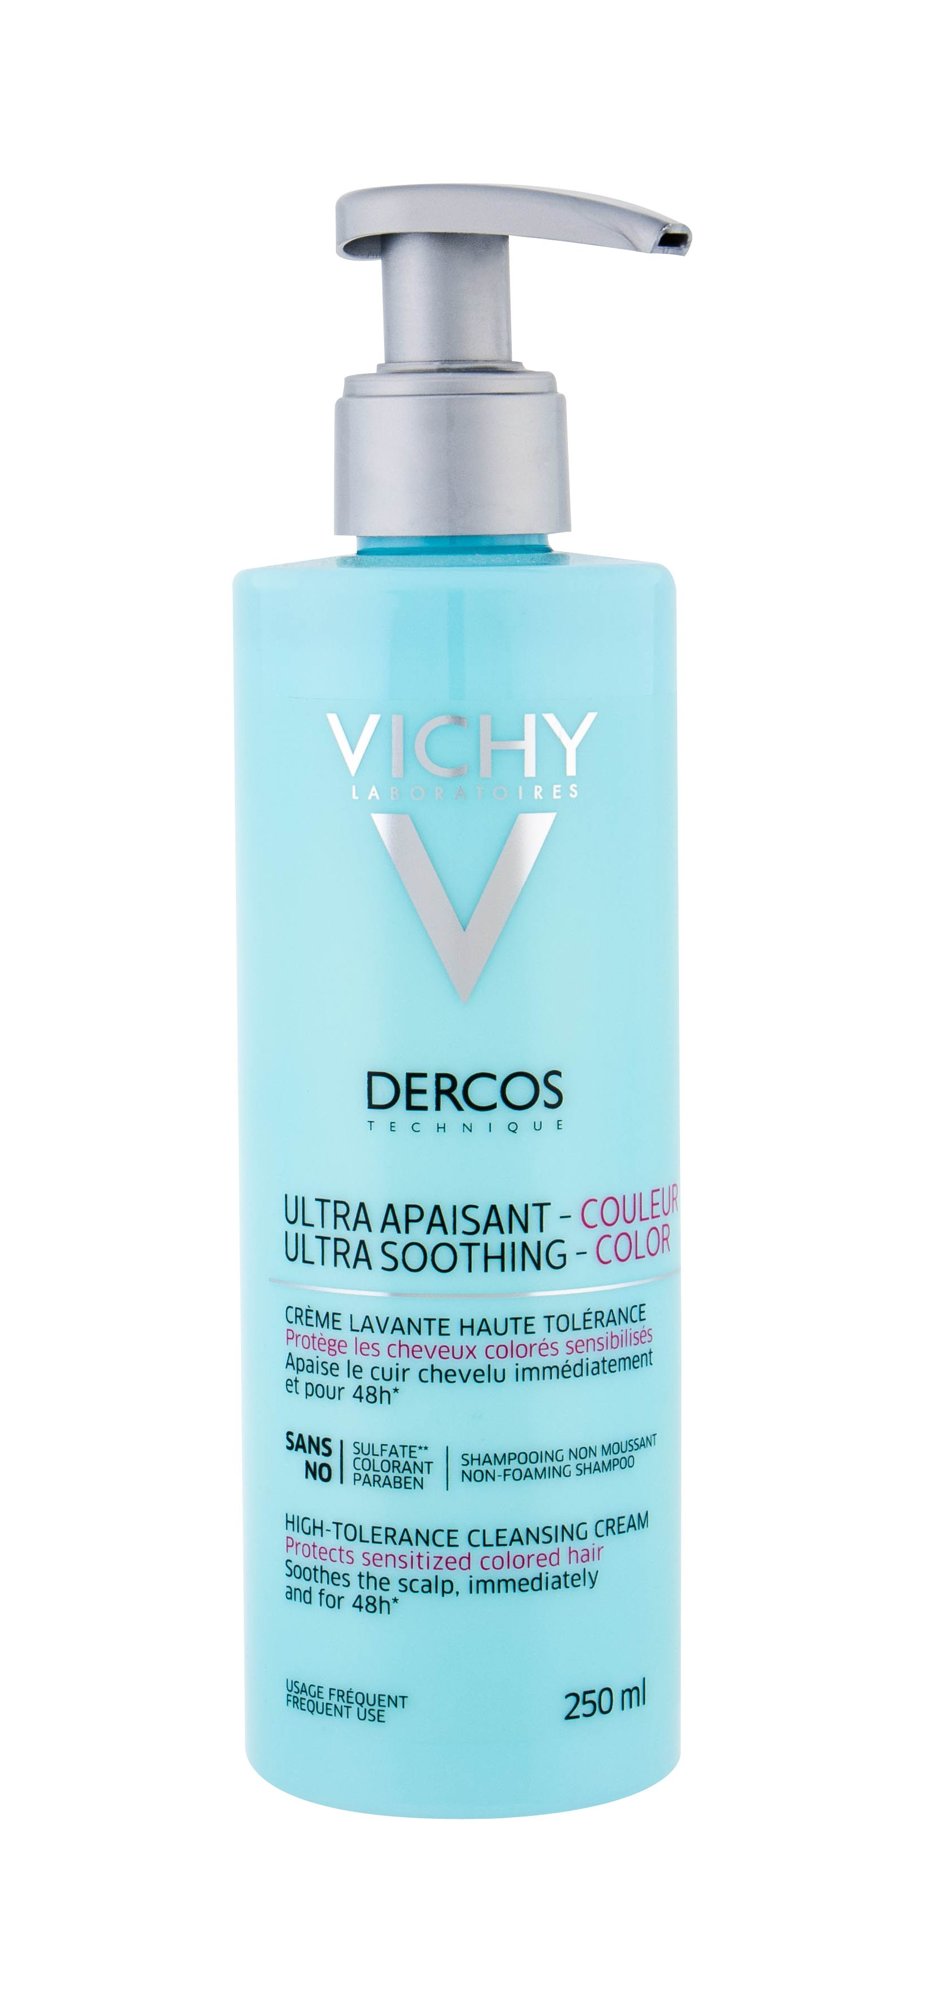 Vichy Dercos Ultra Soothing - Color šampūnas